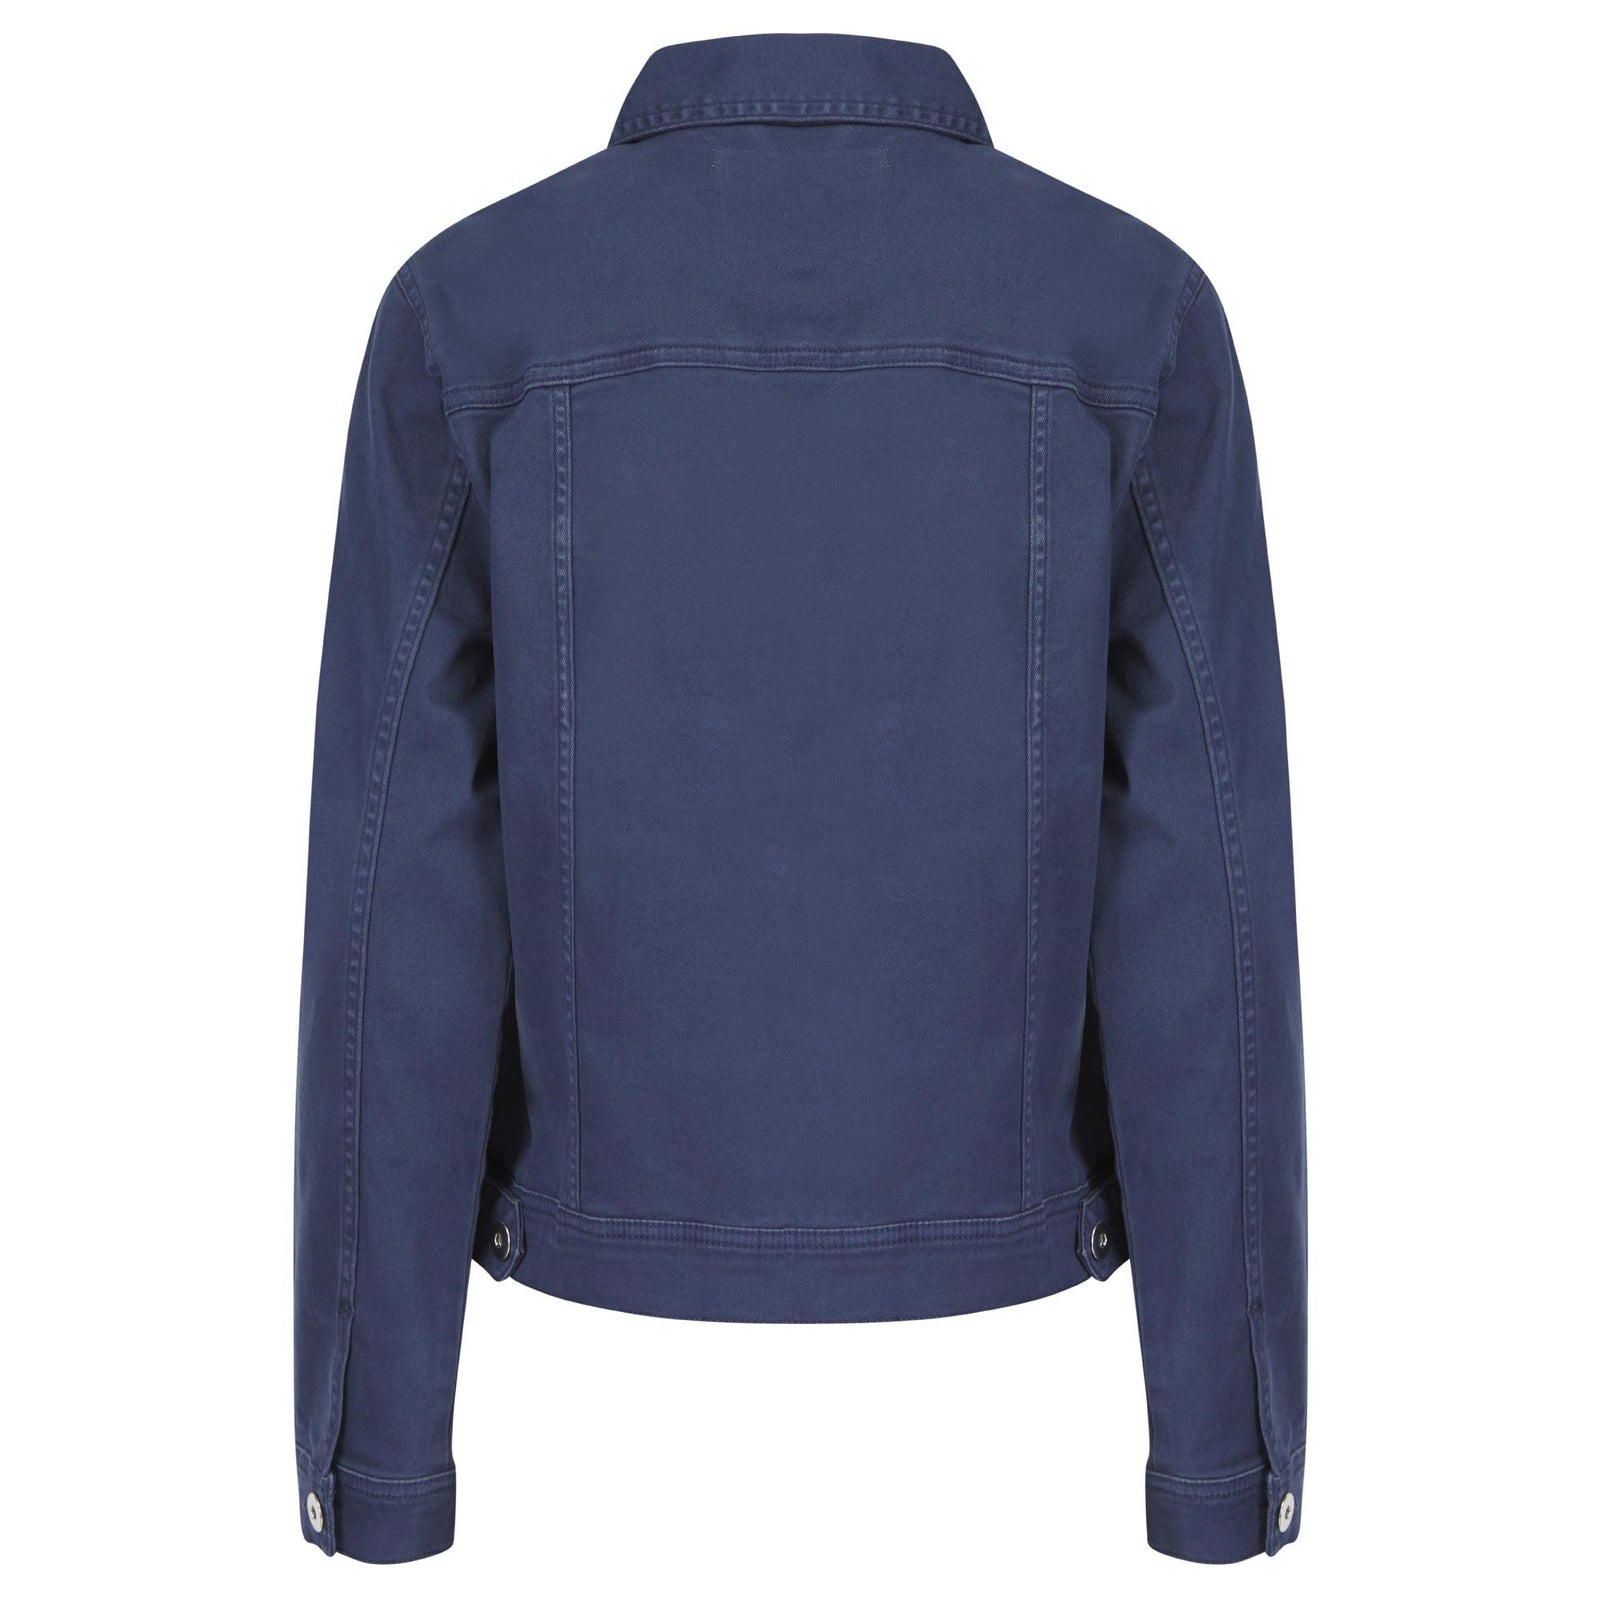 Amara Reya Outwear Twill Jacket - Blue Indigo